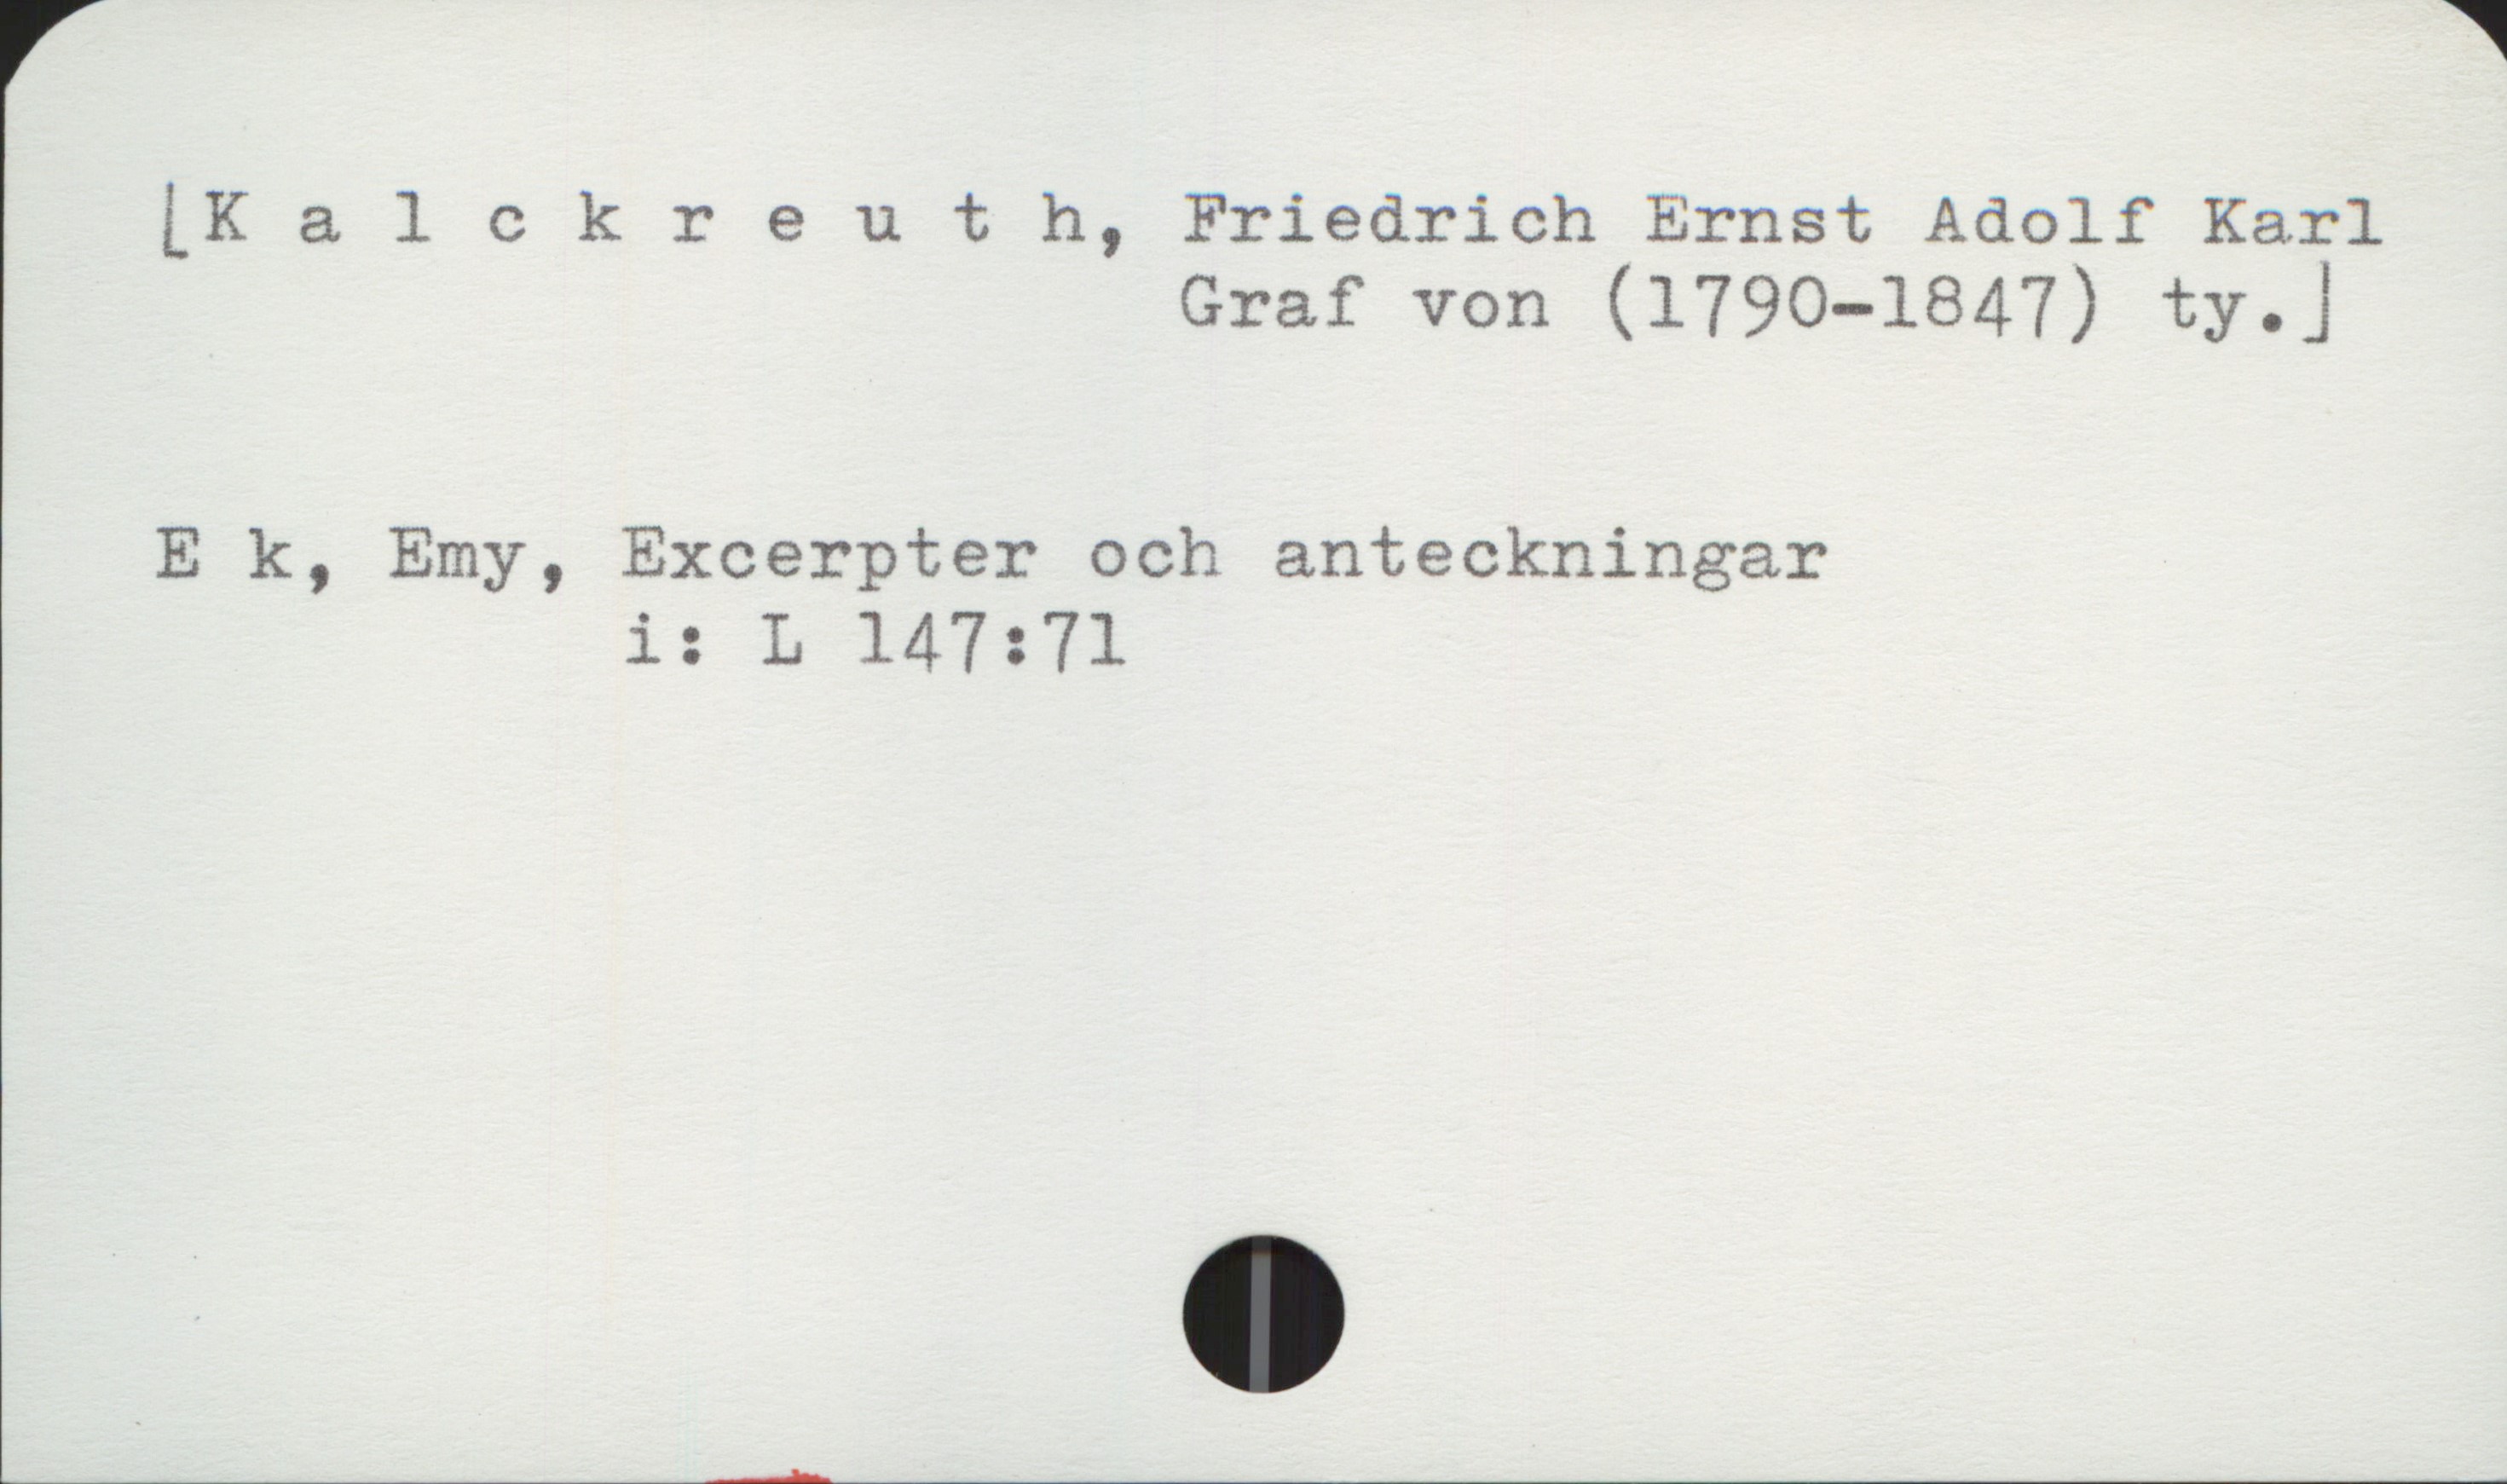 Kalckreuth, Friedrich Ernst Adolf Karl von (1790-1847) [Kalckreuth, Friedrich Ernst Adolf Karl
Graf von (1790-1847) ty. ]


E k, Emy, Excerpter och anteckningar
                  i: L 147:71